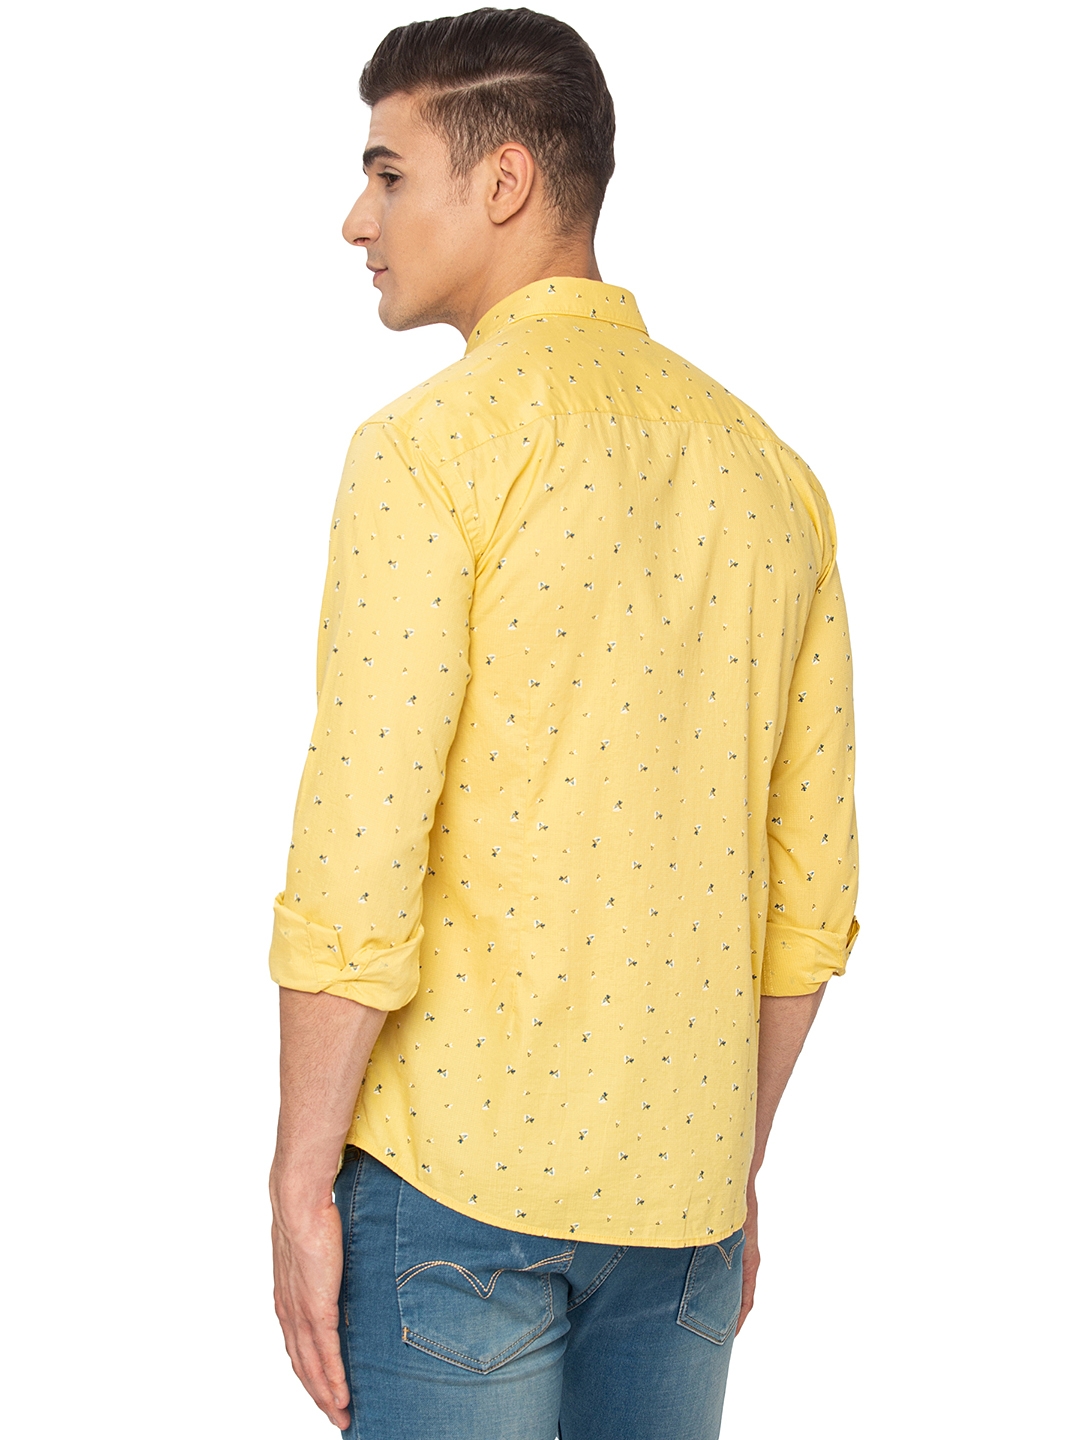 Greenfibre | Lemon Yellow Printed Slim Fit Casual Shirt | Greenfibre 2